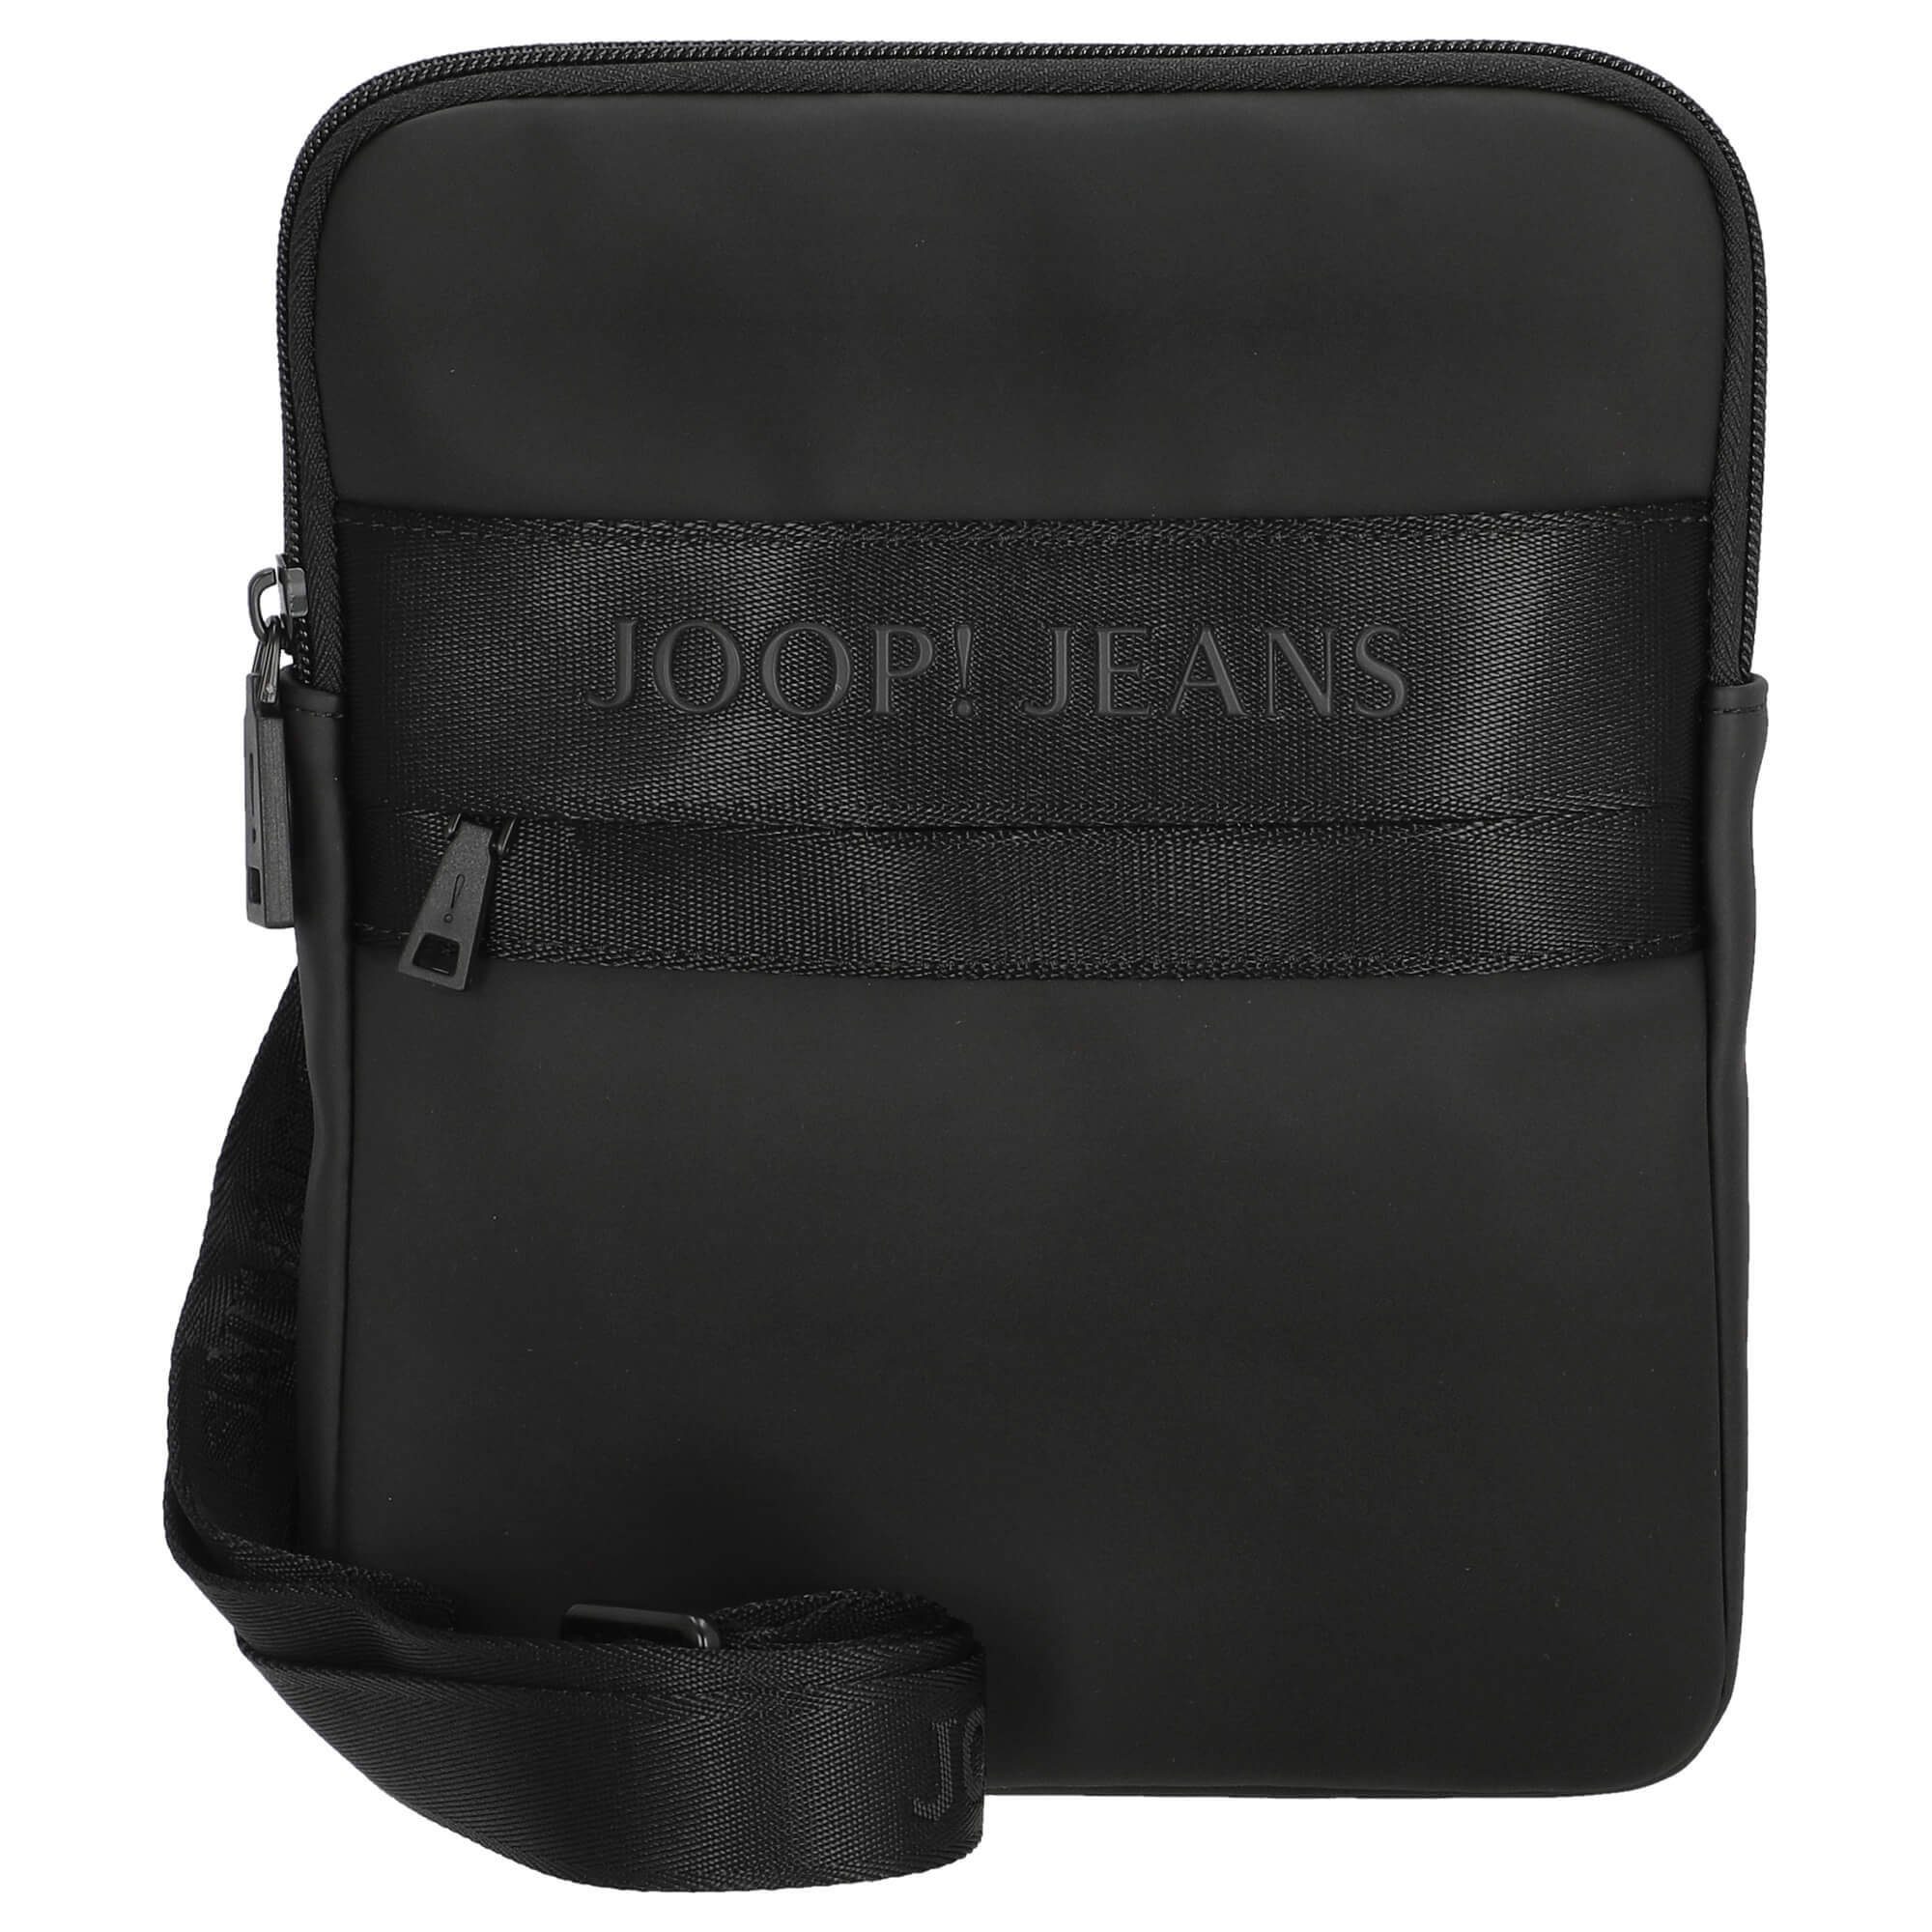 Joop Jeans Umhängetasche, Volumen in Liter | Umhängetaschen